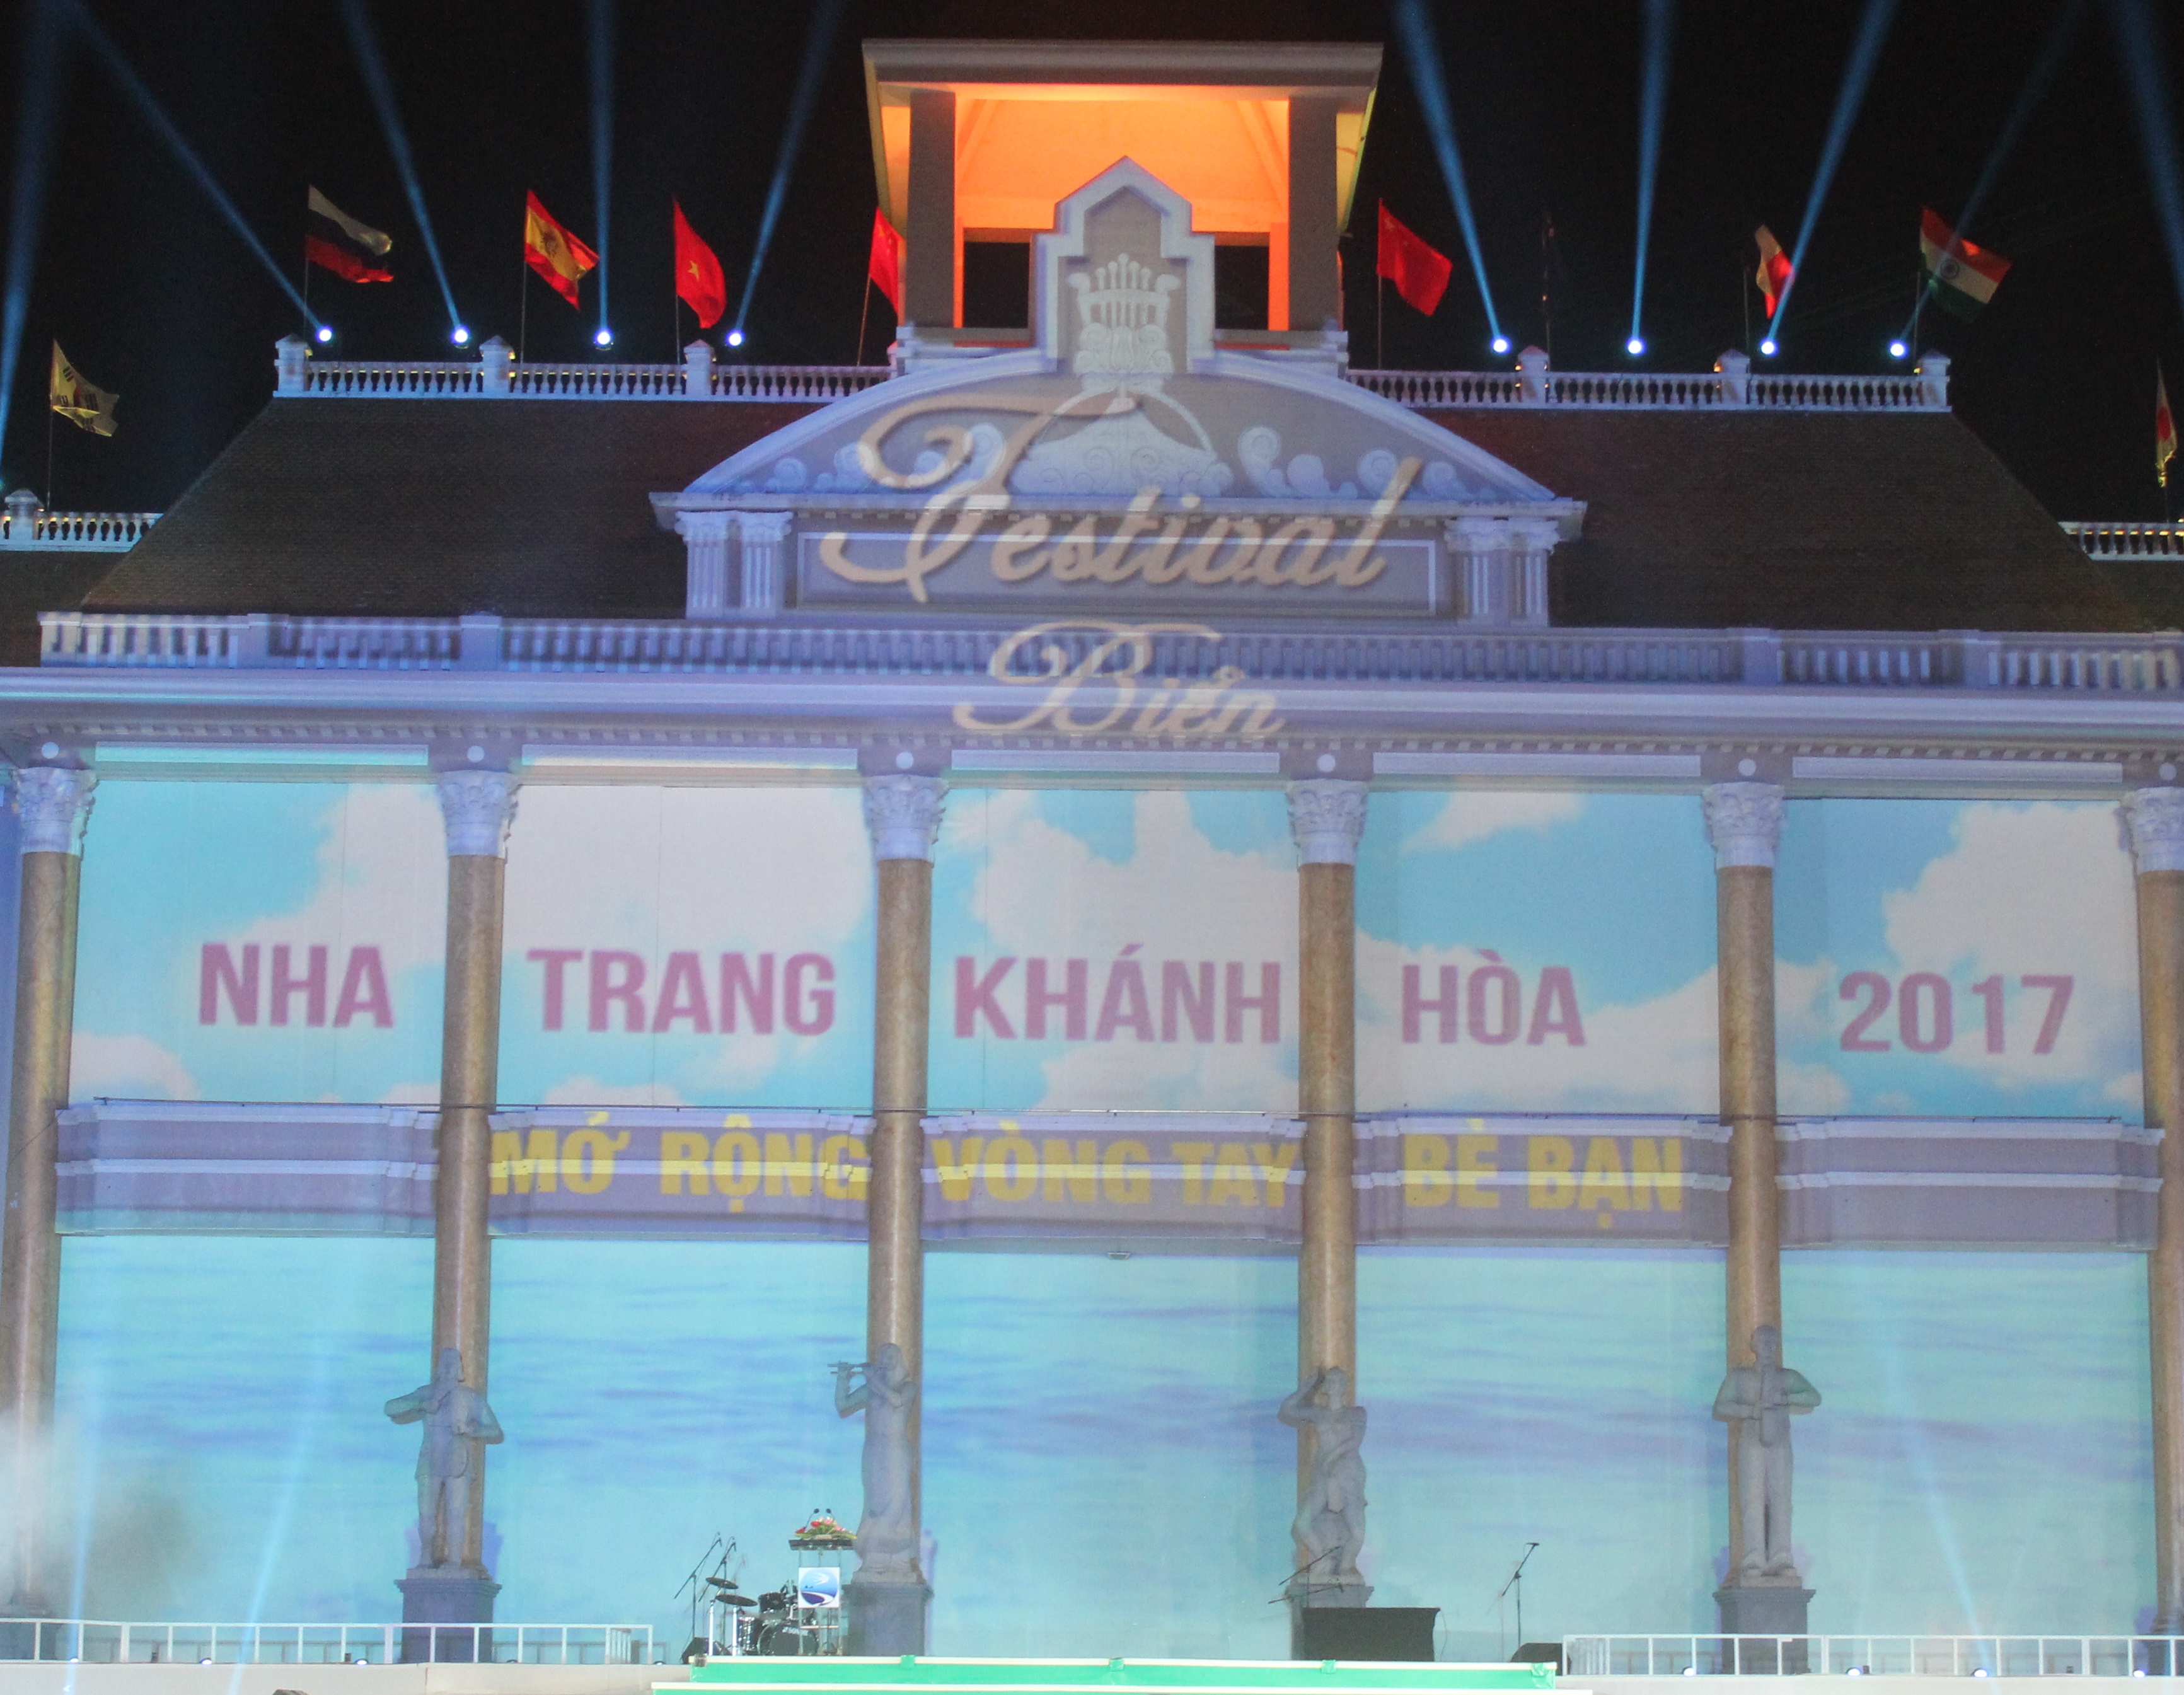 Lễ khai mạc Festival Biển Nha Trang – Khánh Hòa 2017